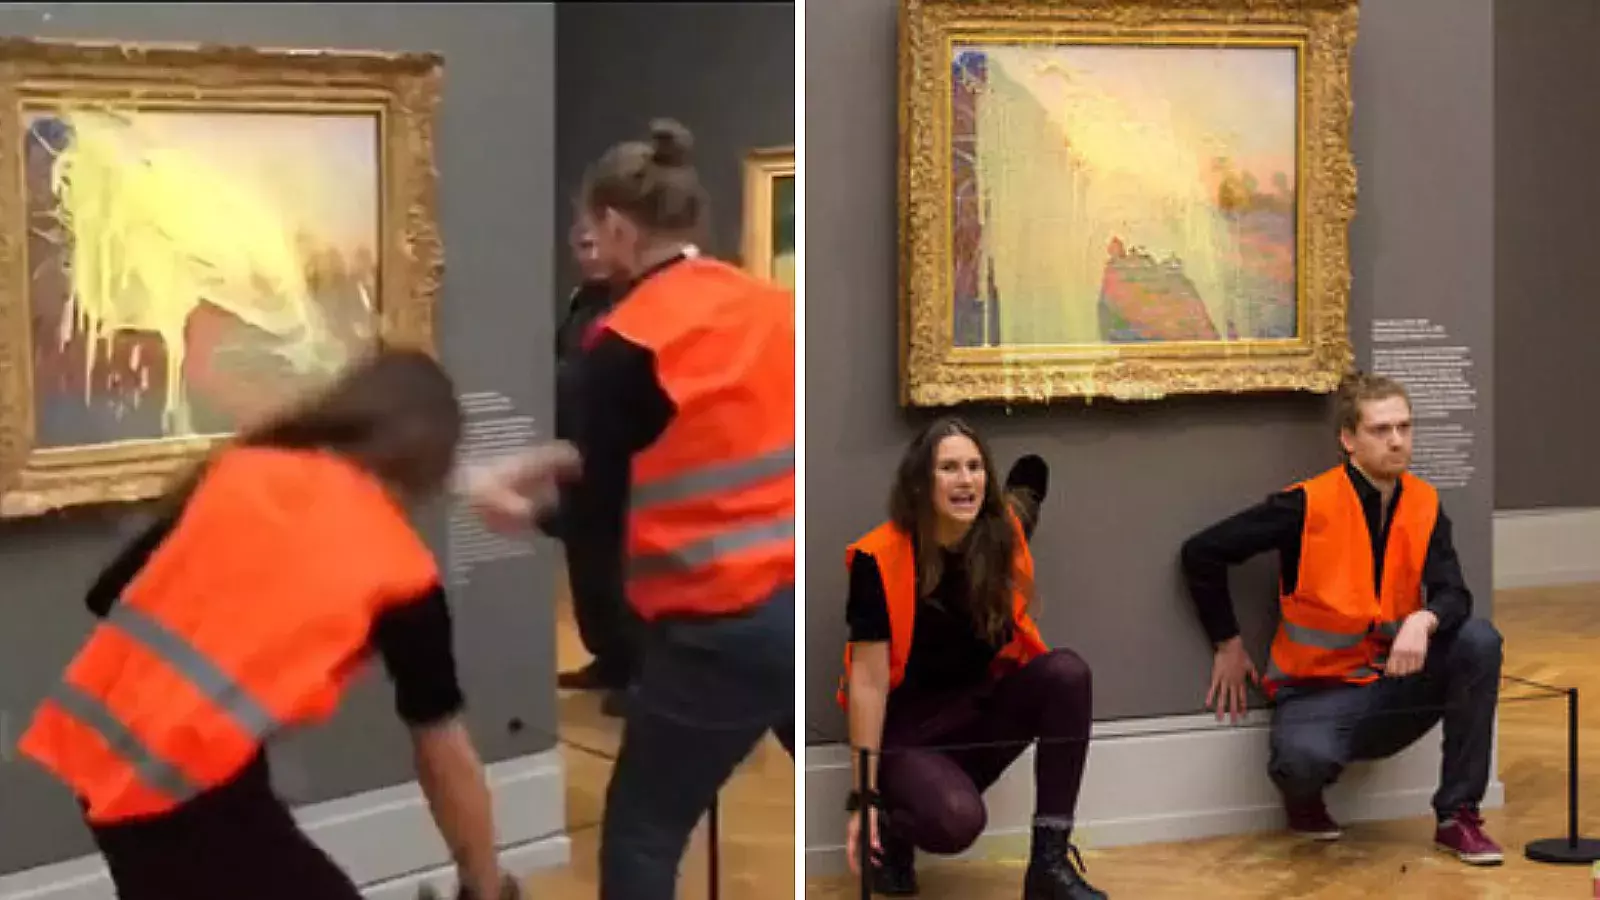 Activistas climáticos alemanes arrojan puré de papas a cuadro de Monet valorado en más de $110 millones